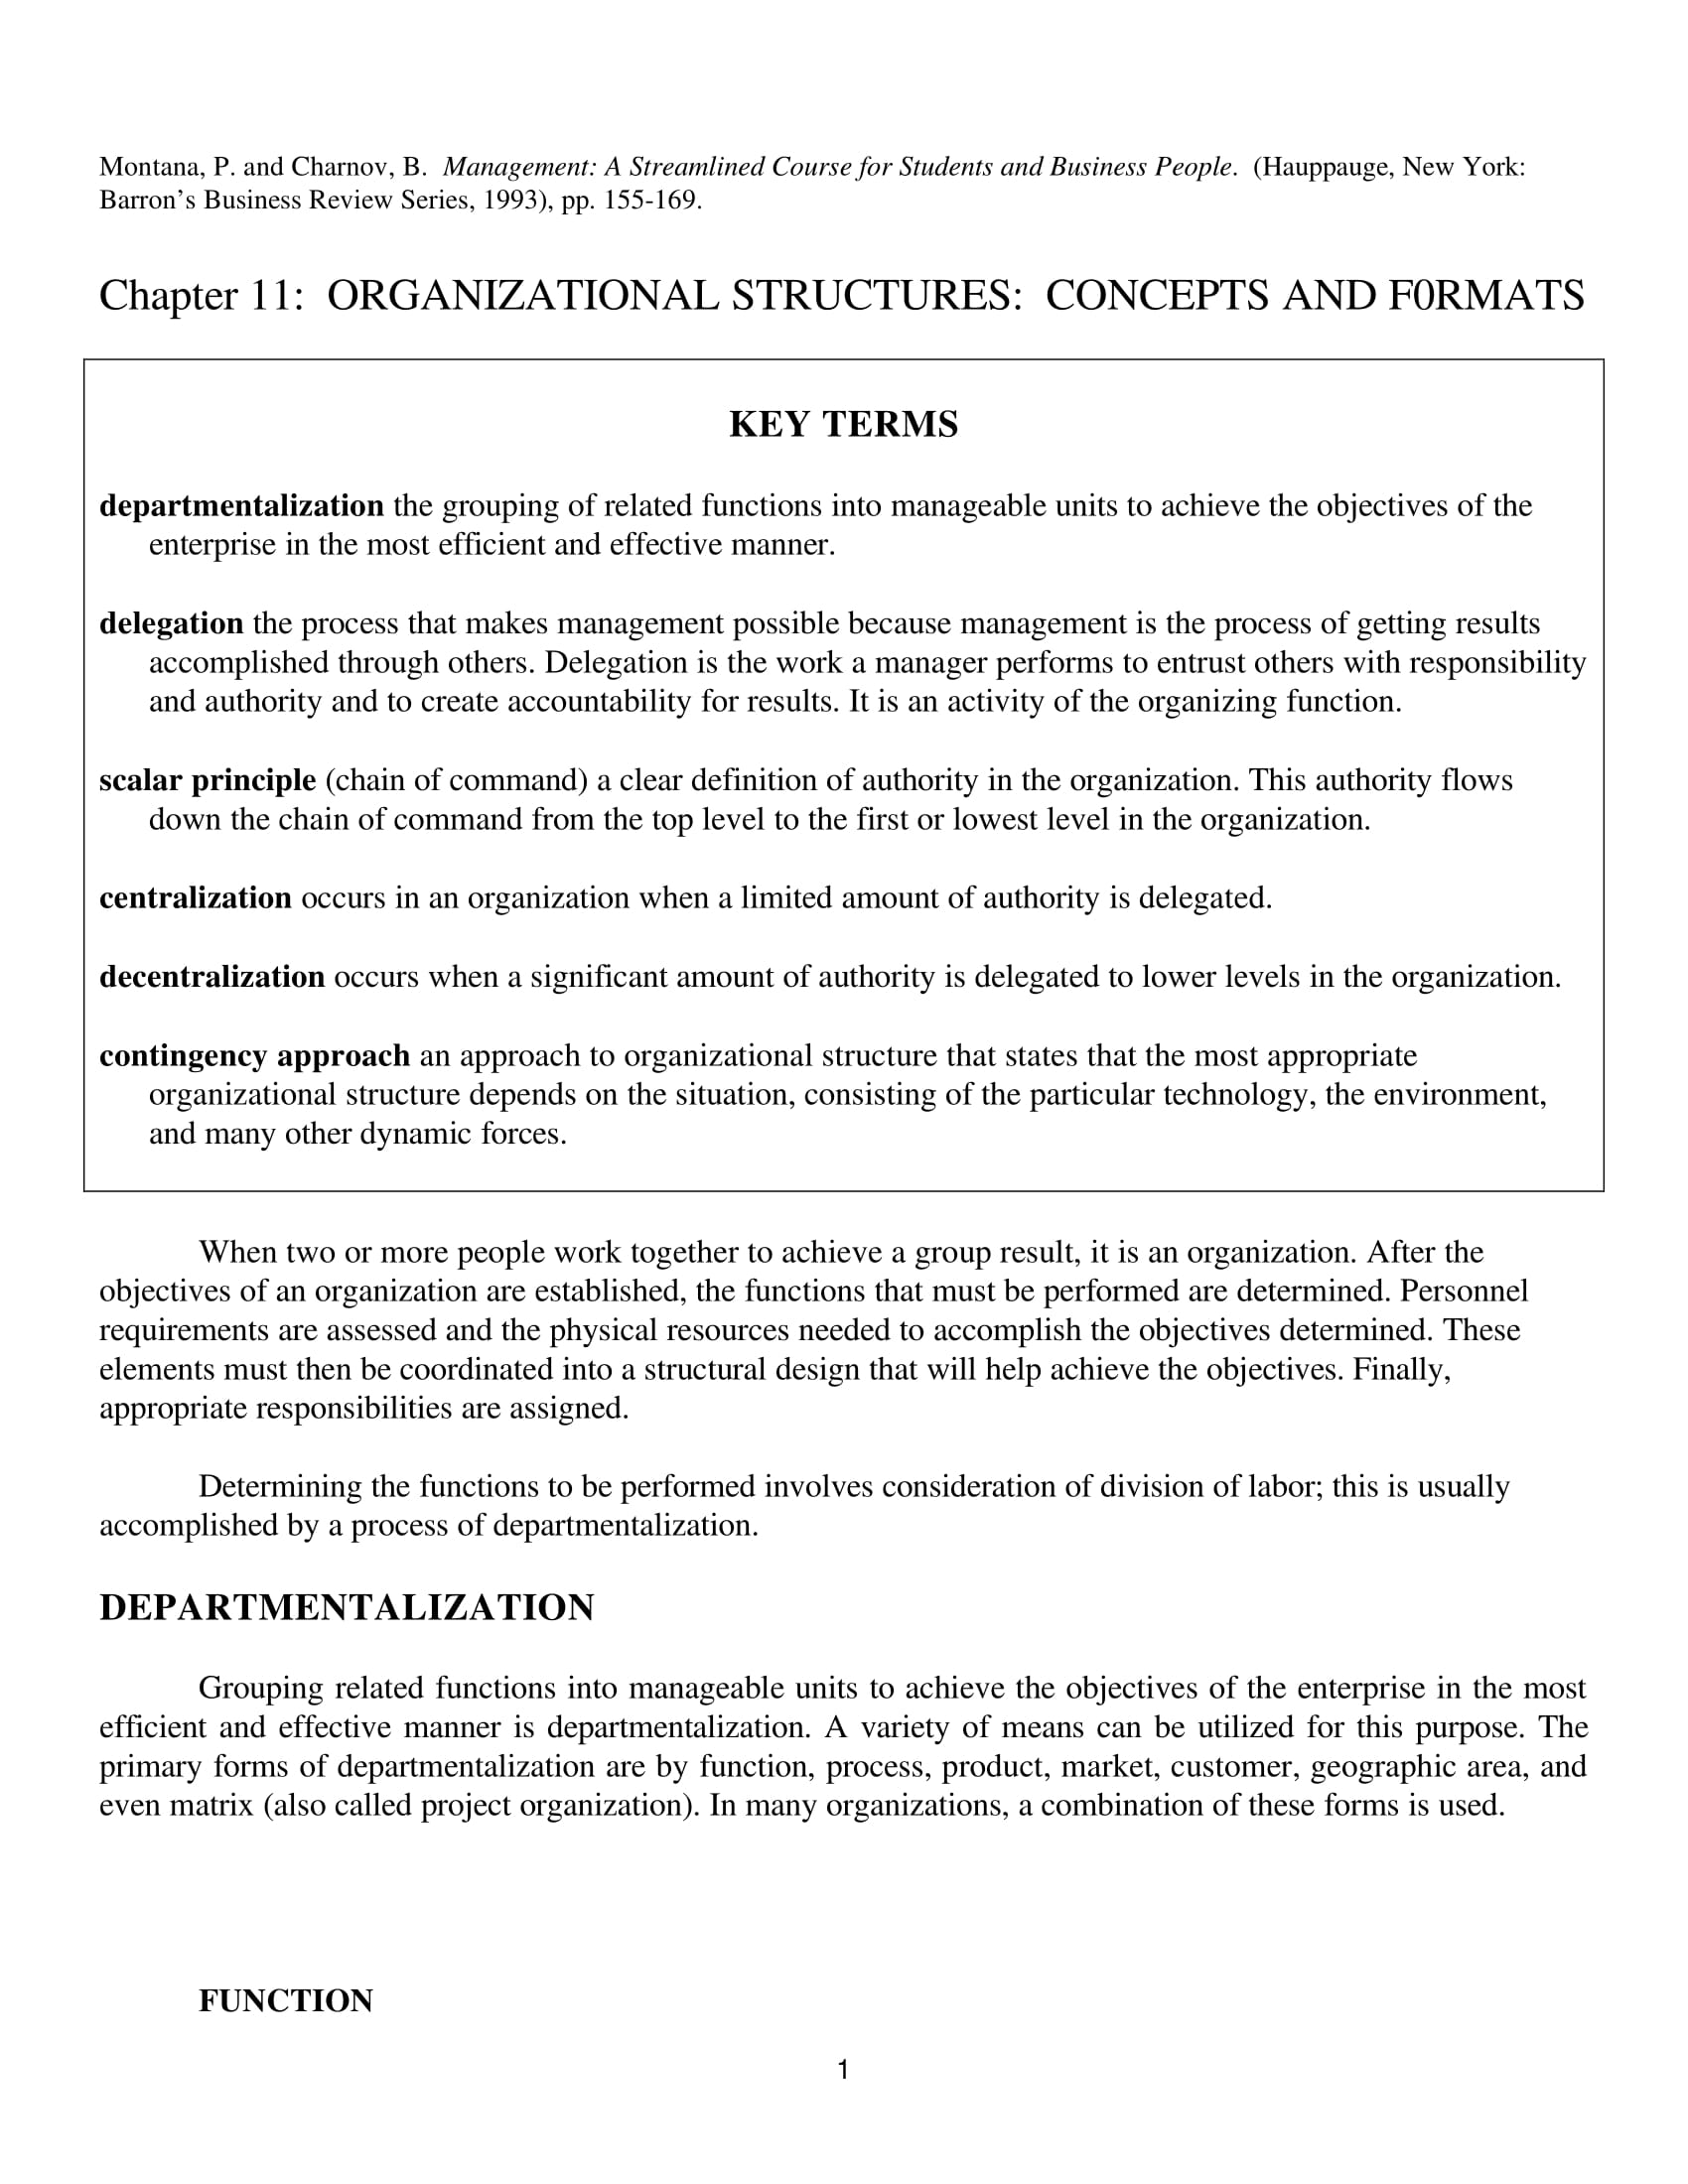 organizational statement essay